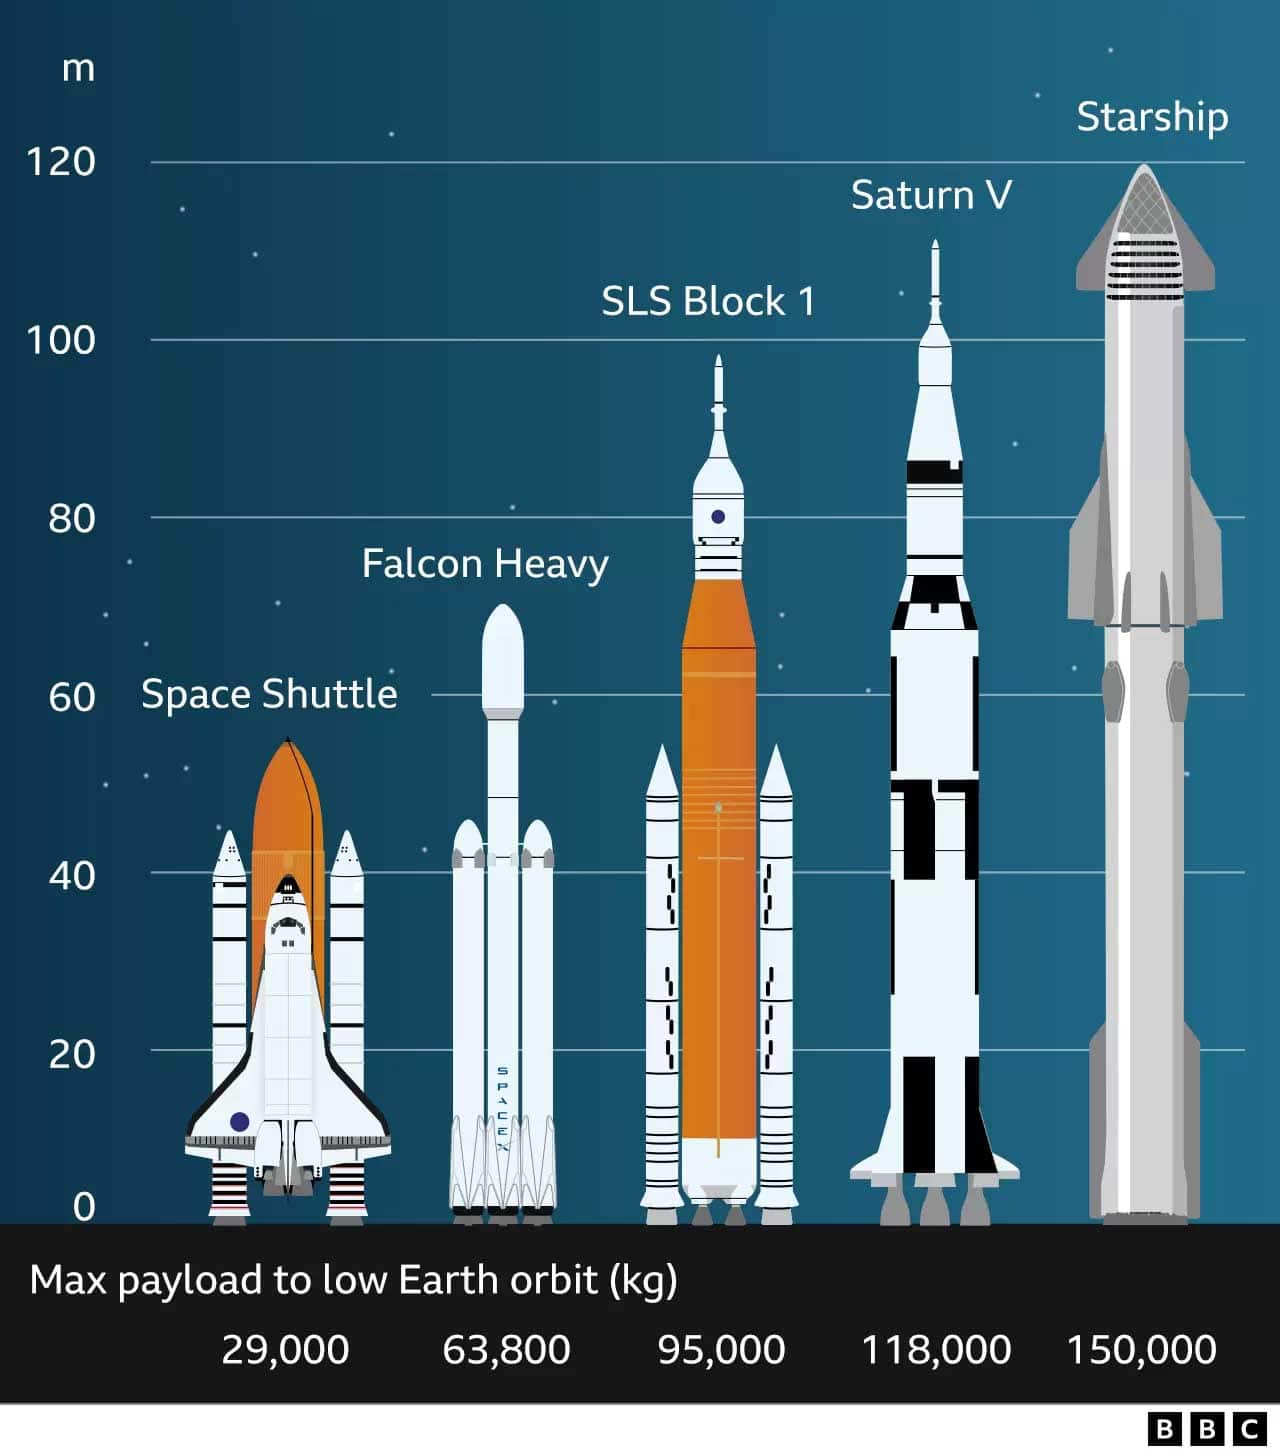 SpaceX et le Starship, la nouvelle ère du voyage dans l'espace ?